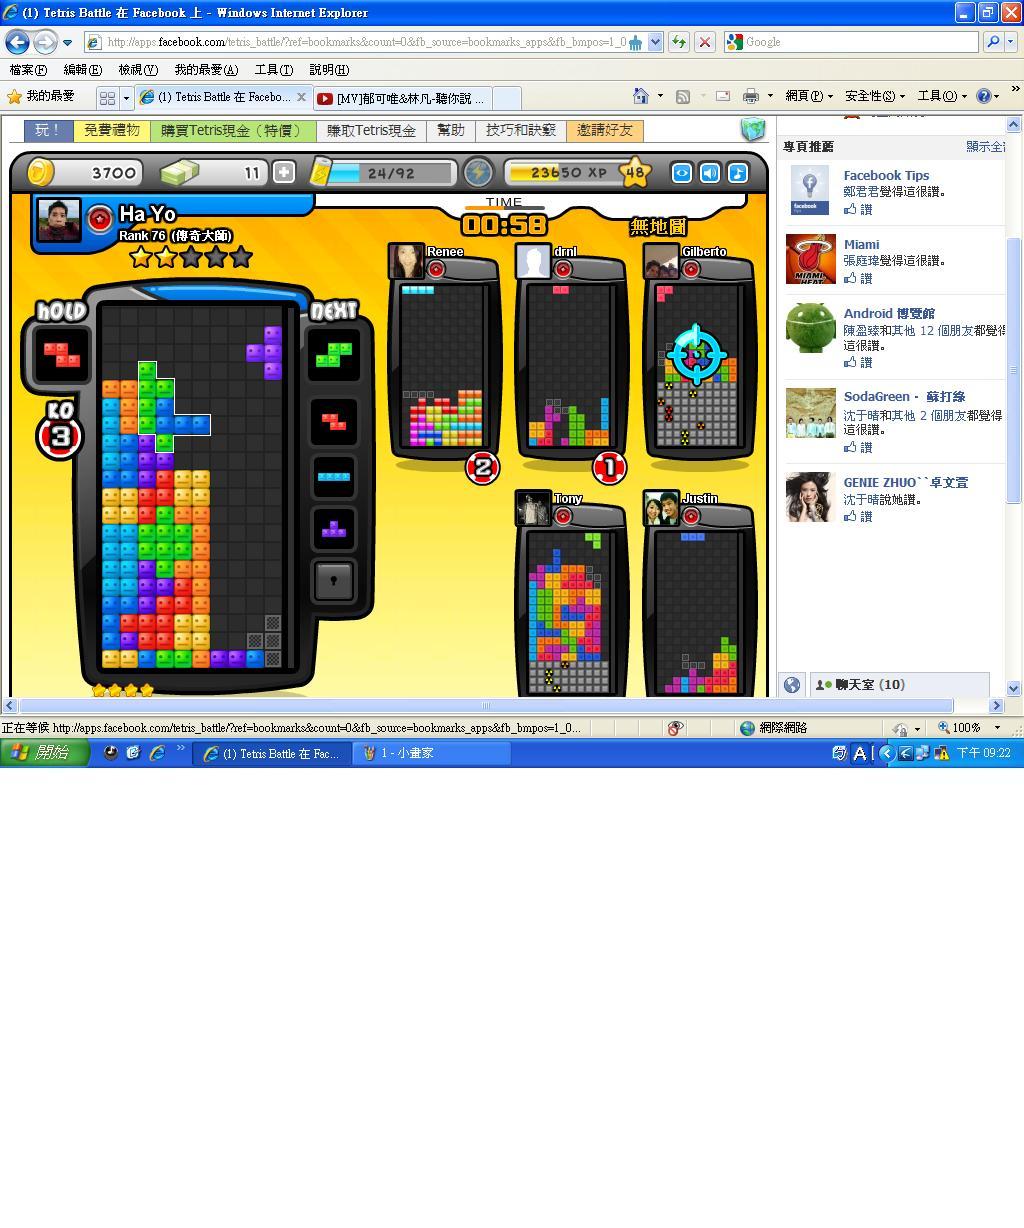 問題】6P的BUG!!!! @Tetris Battle 哈啦板- 巴哈姆特